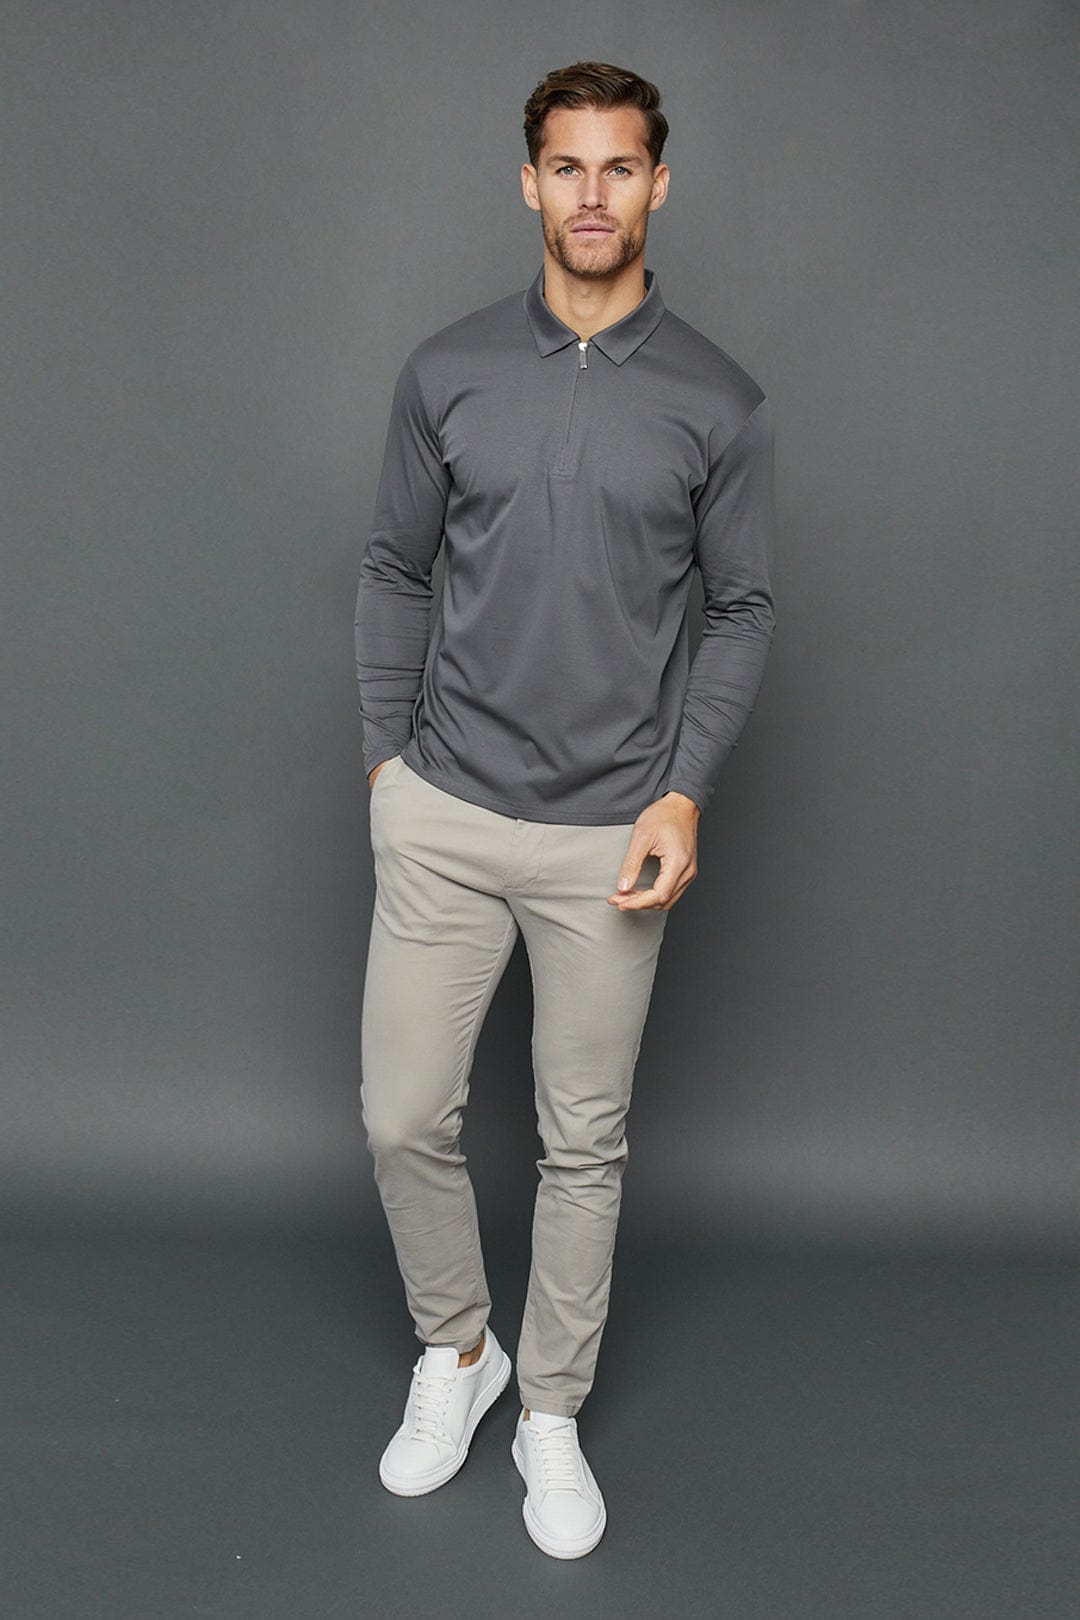 Luxe Mercerised Long Sleeve Zip Polo Shirt - Charcoal